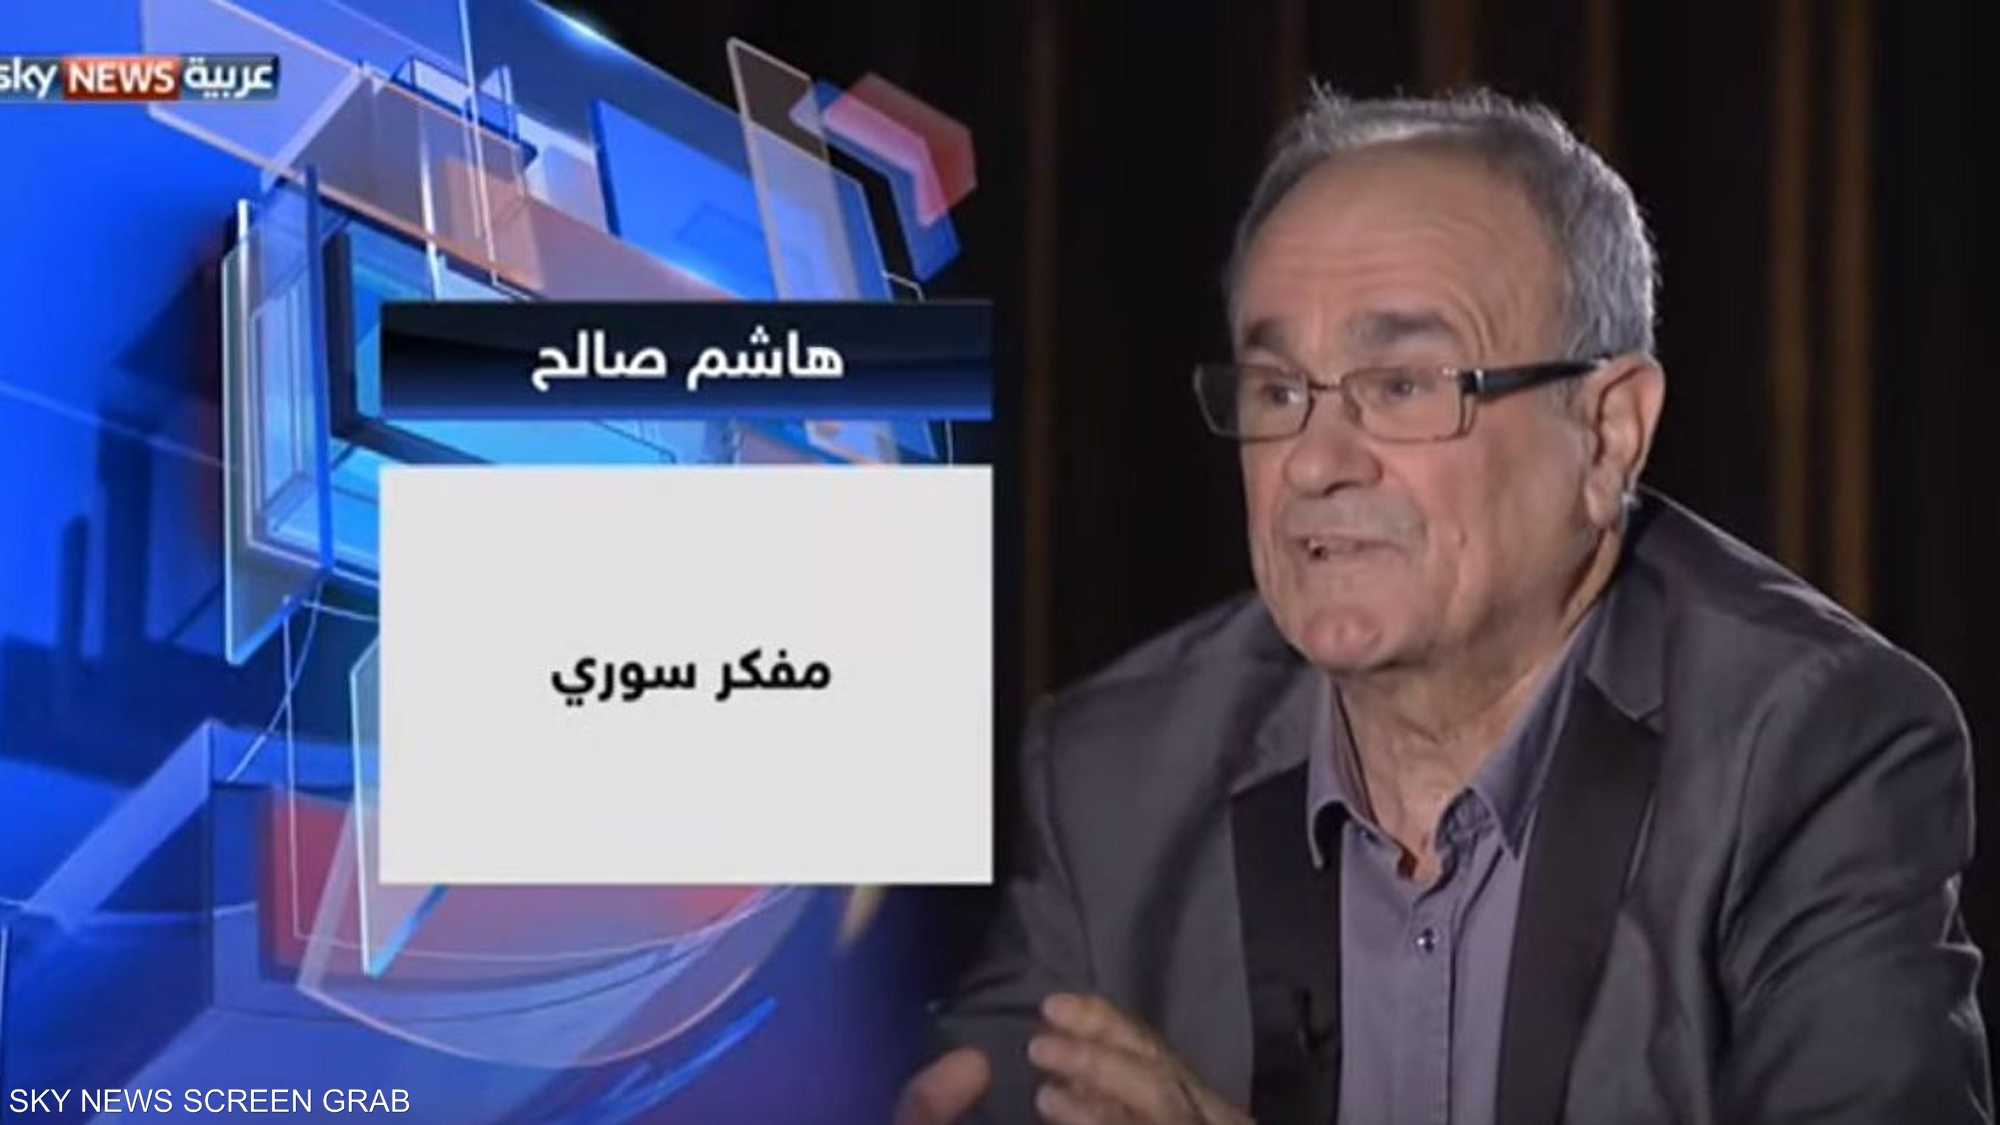 المفكر السوري هاشم صالح في حديث العرب